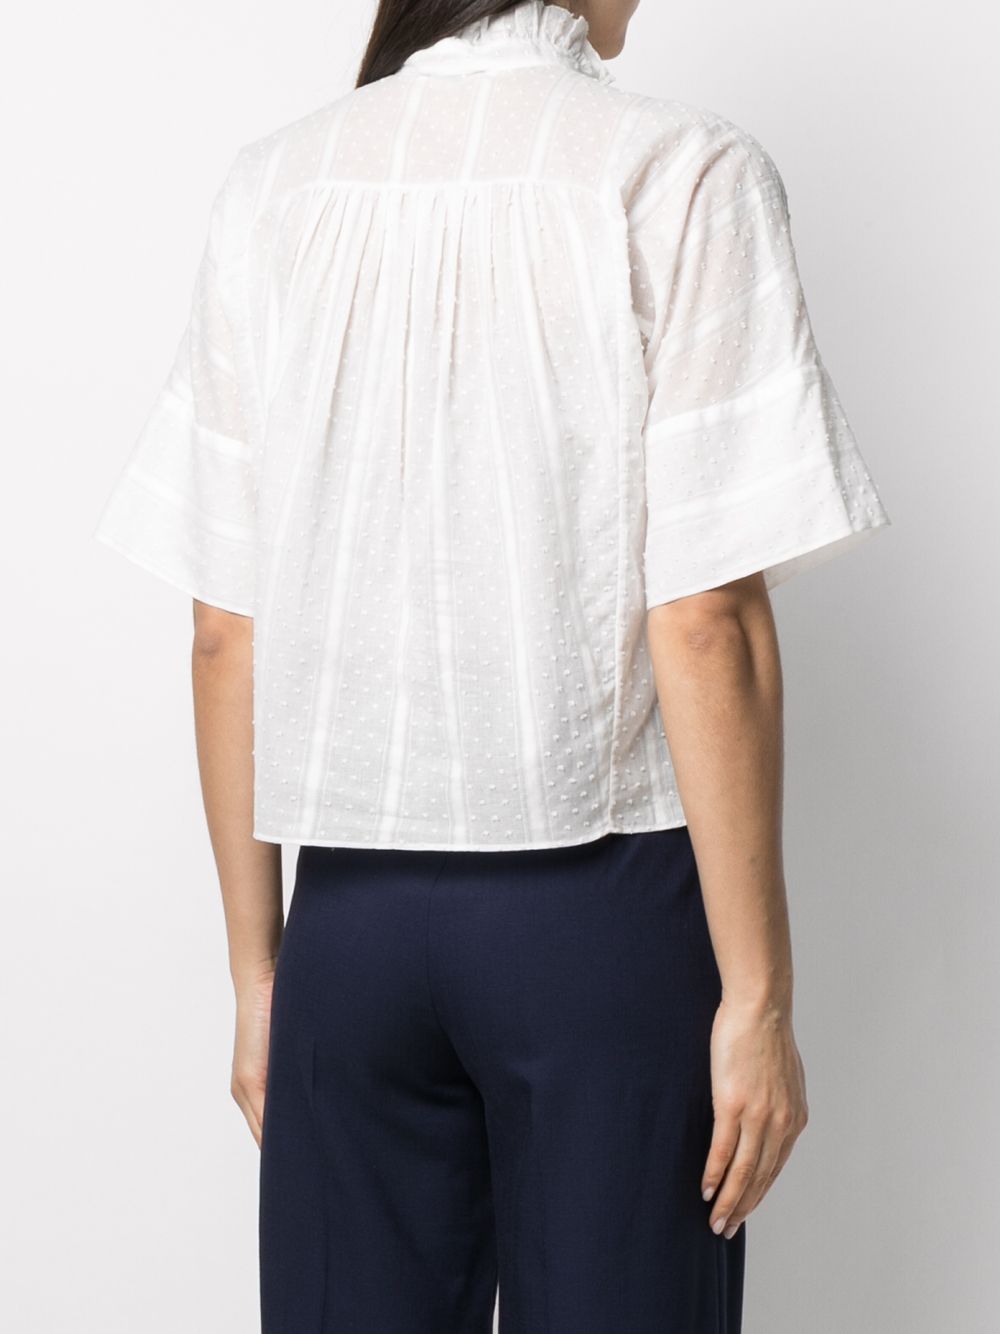 фото Sandro paris блузка celeste с оборками и узором в мелкую точку